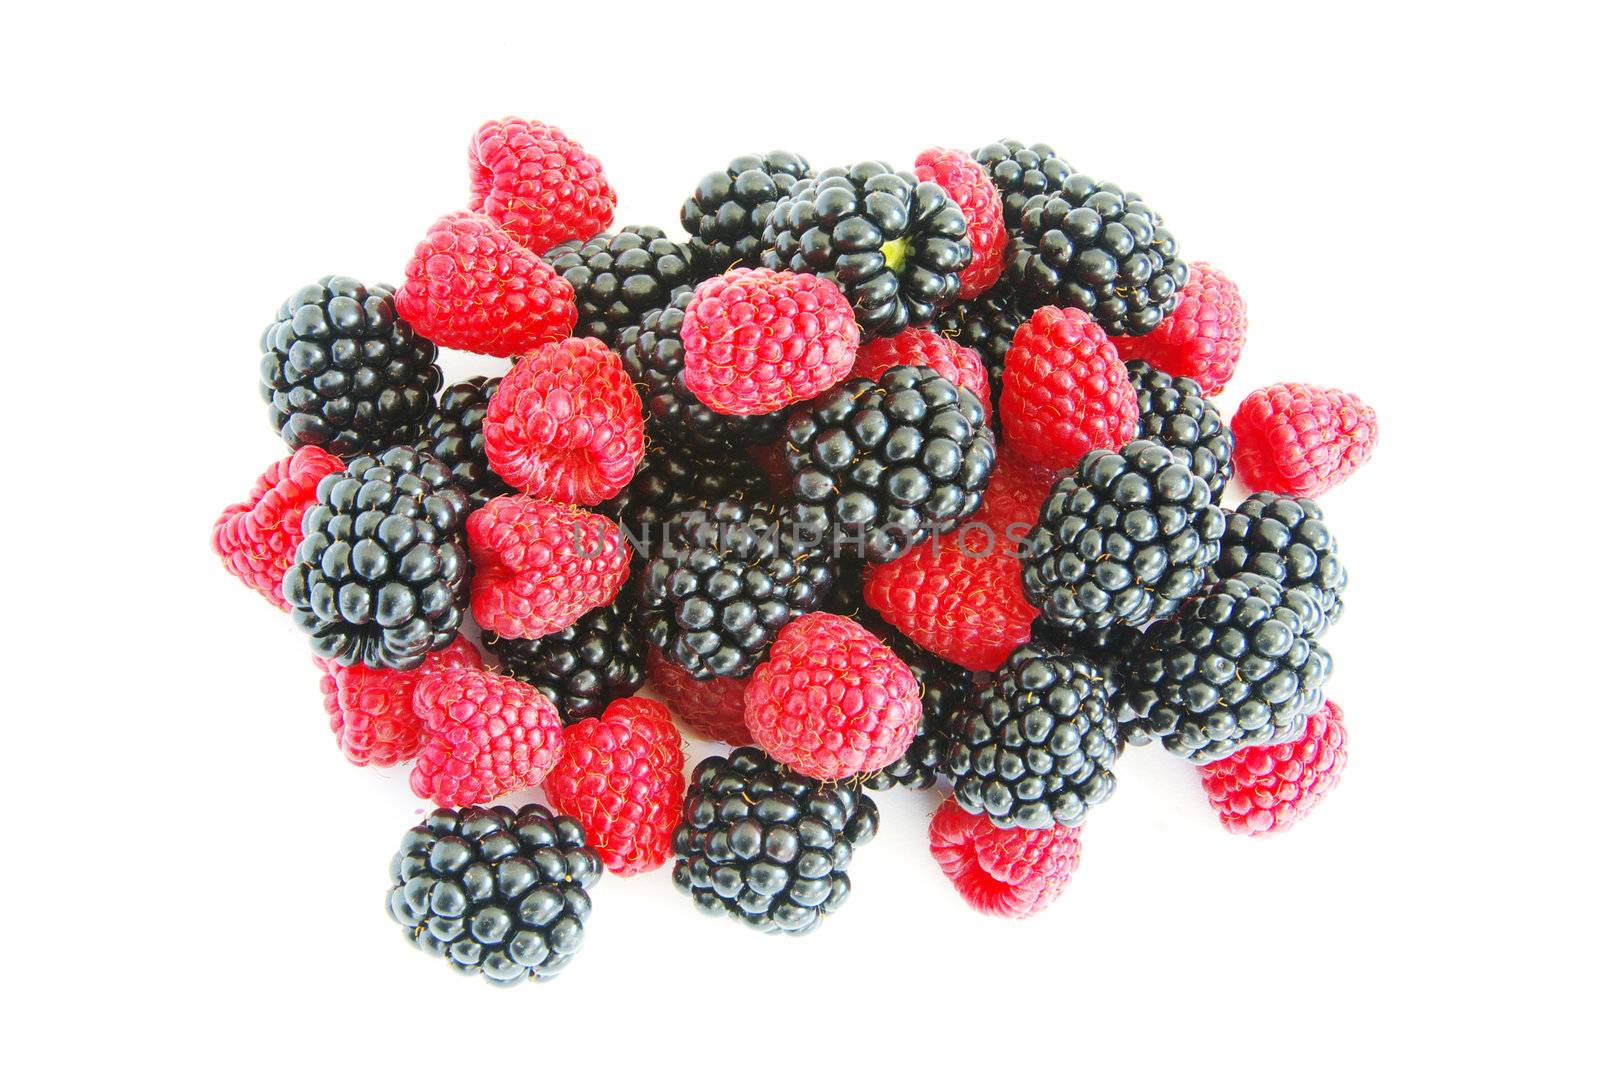 raspberry and blackberry by Pakhnyushchyy